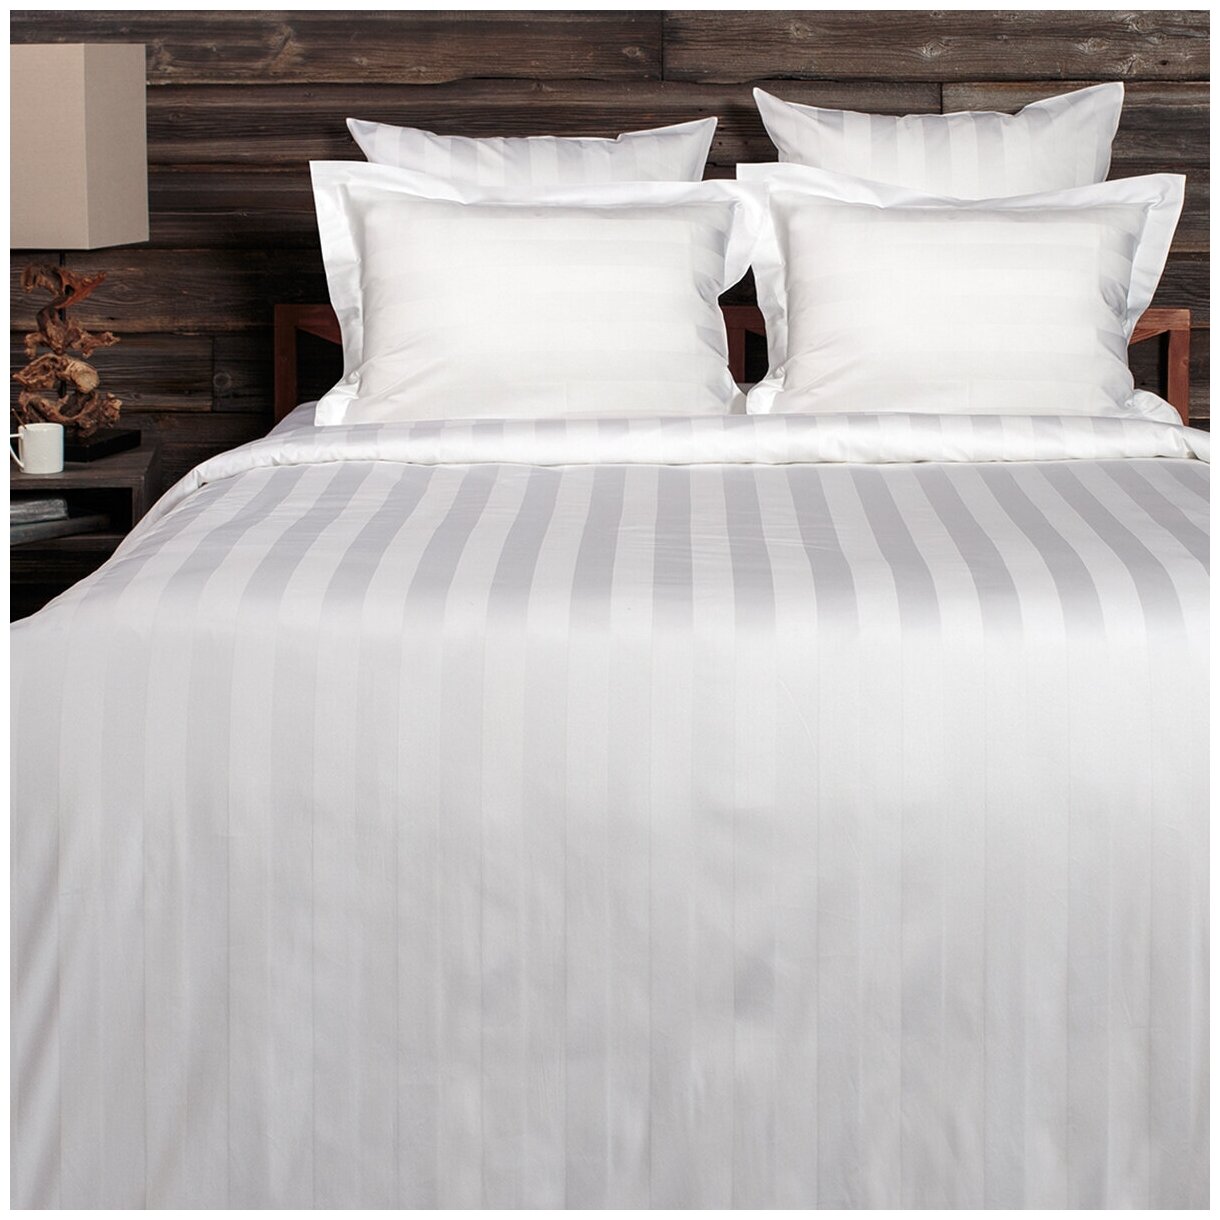 Комплект постельного белья La Prima постельное бельё мако-сатин белоснежный, размер 2 спальный (175x215см)